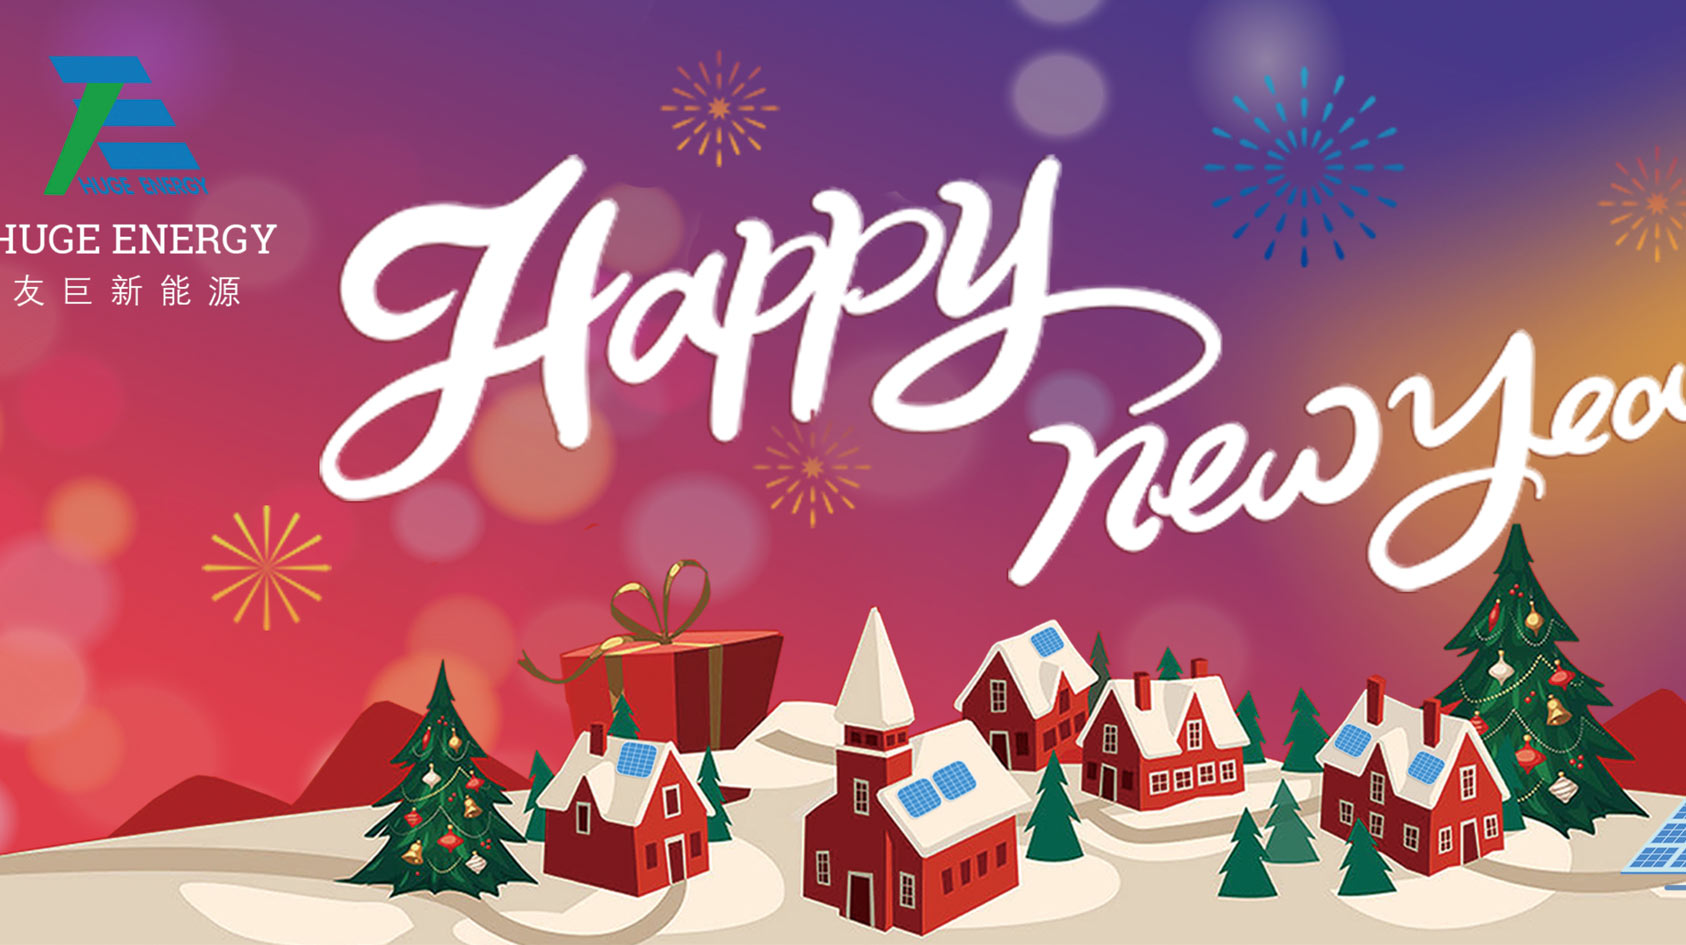 No início do novo ano, a Huge Energy deseja-lhe um feliz ano novo!